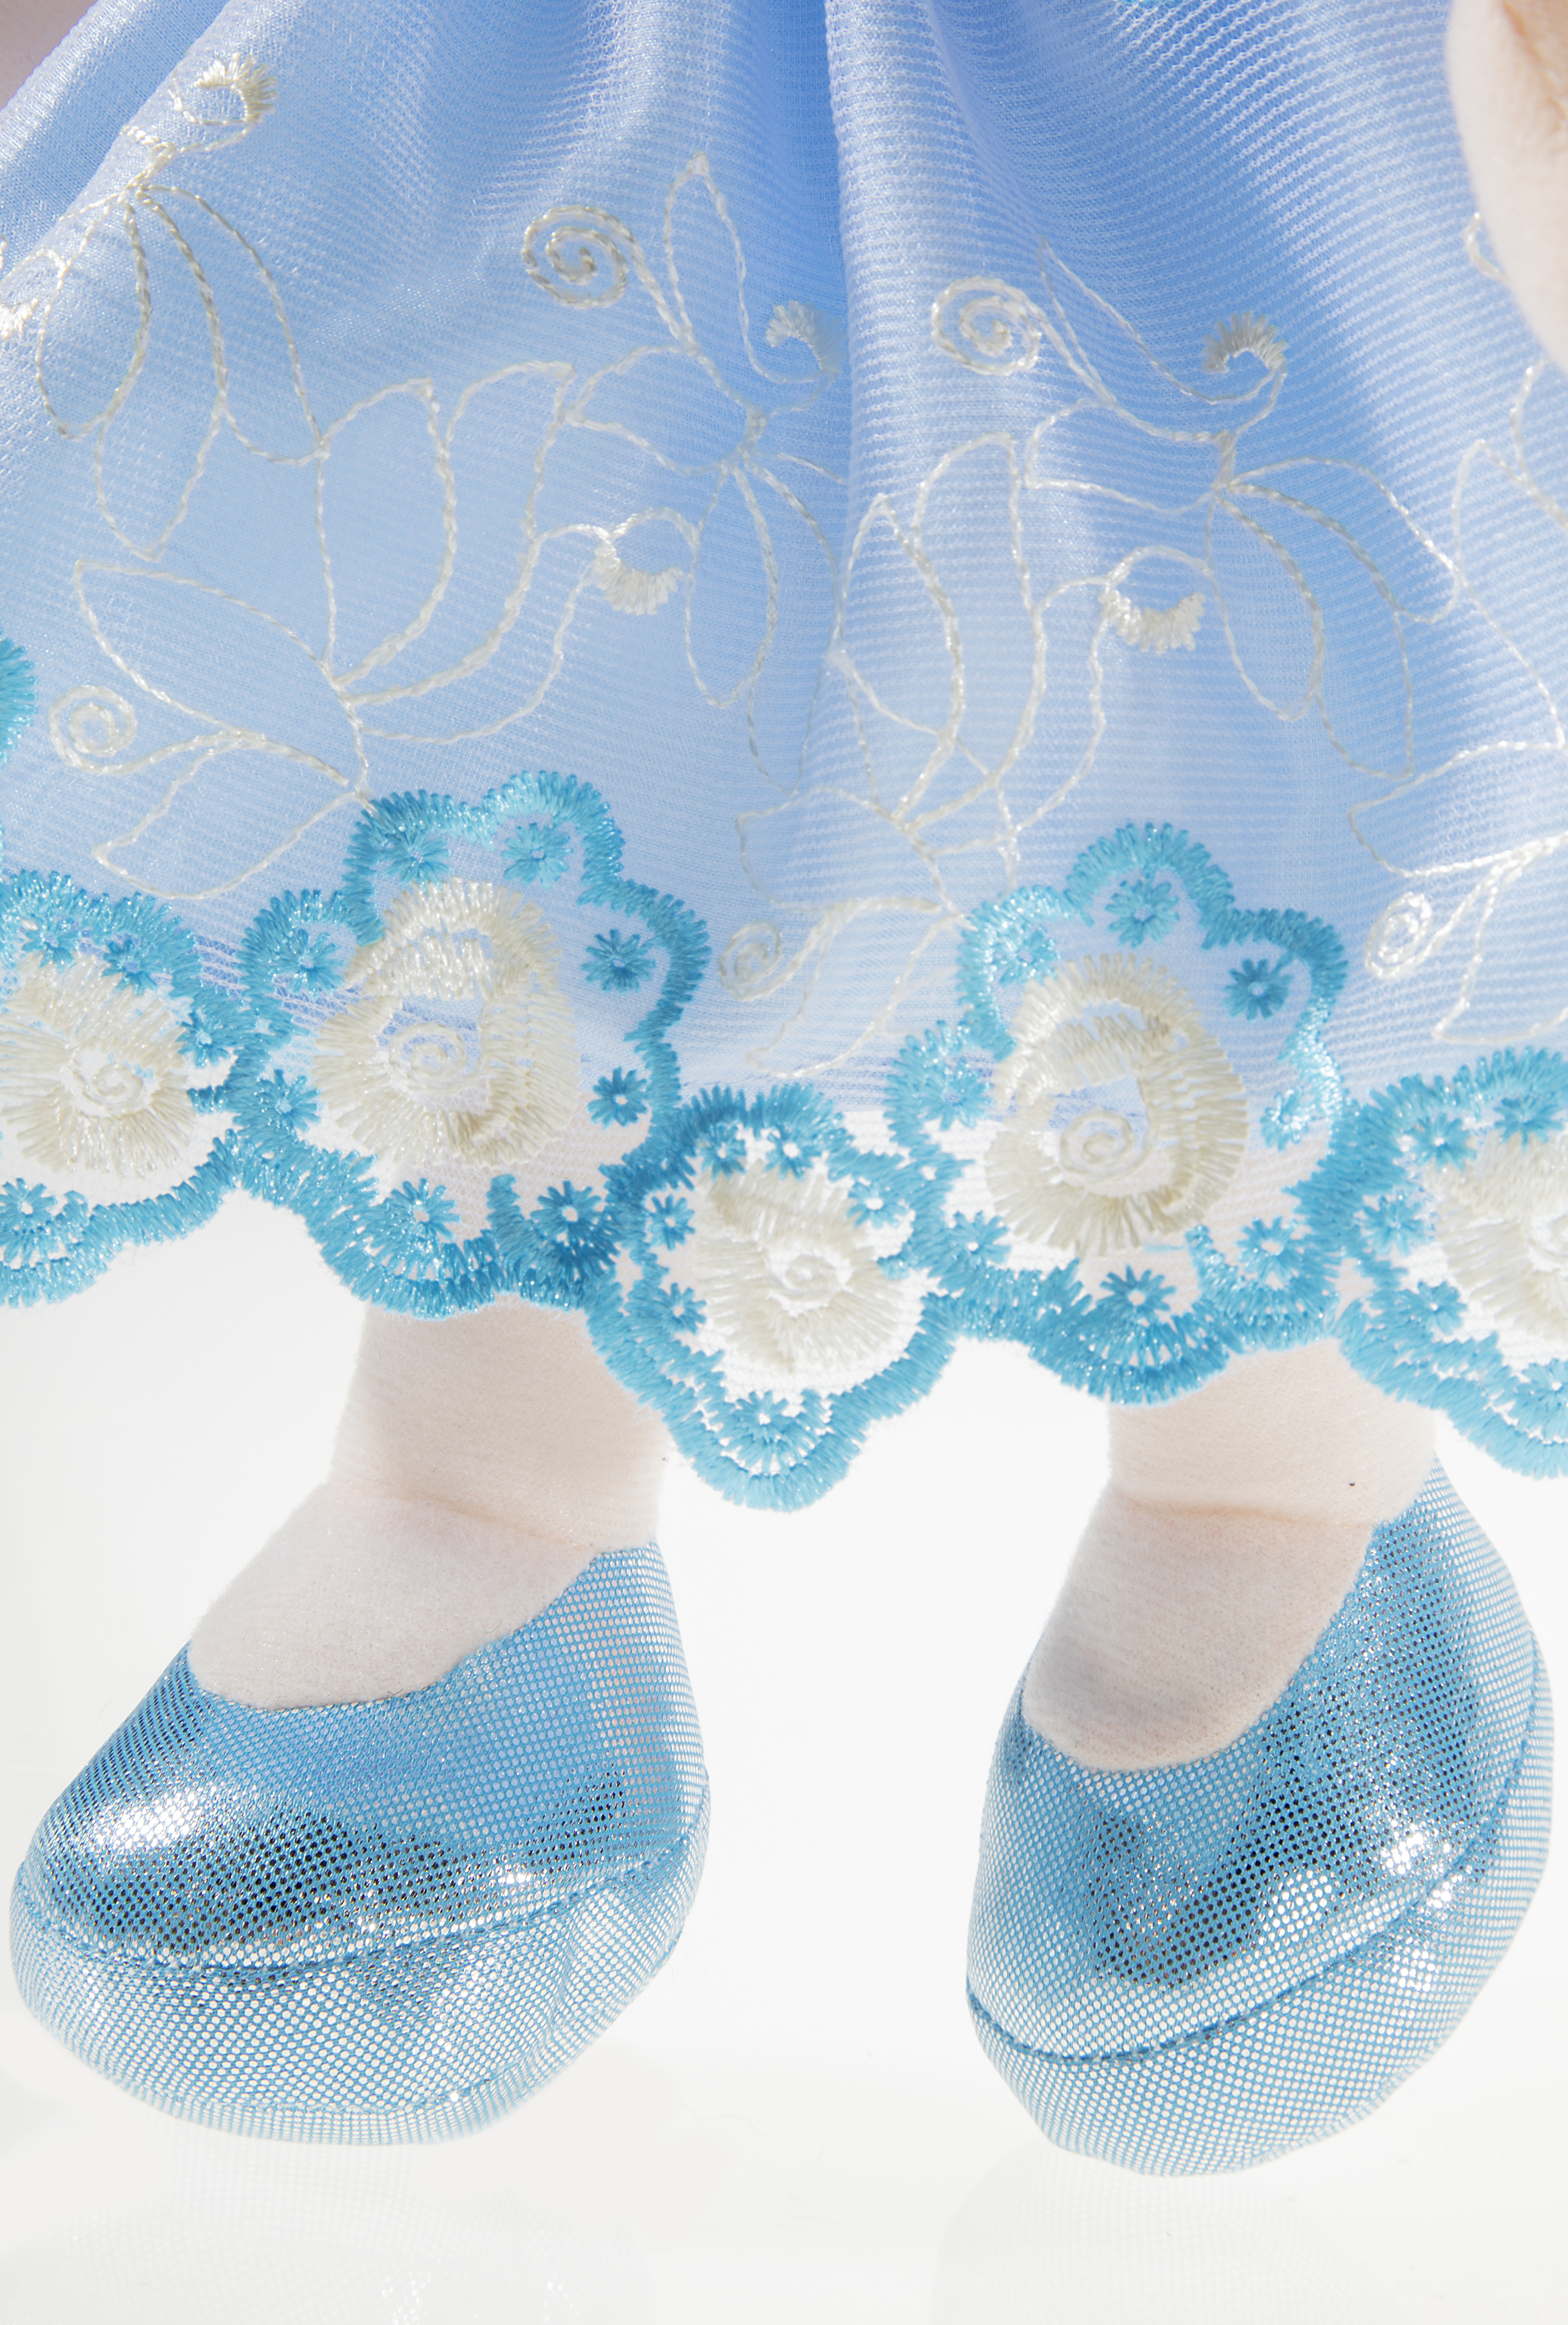 Heunec Bella-Azurri in 35cm aus der Bambola Dolce Serie mit blau-weißen Haaren Schuhe